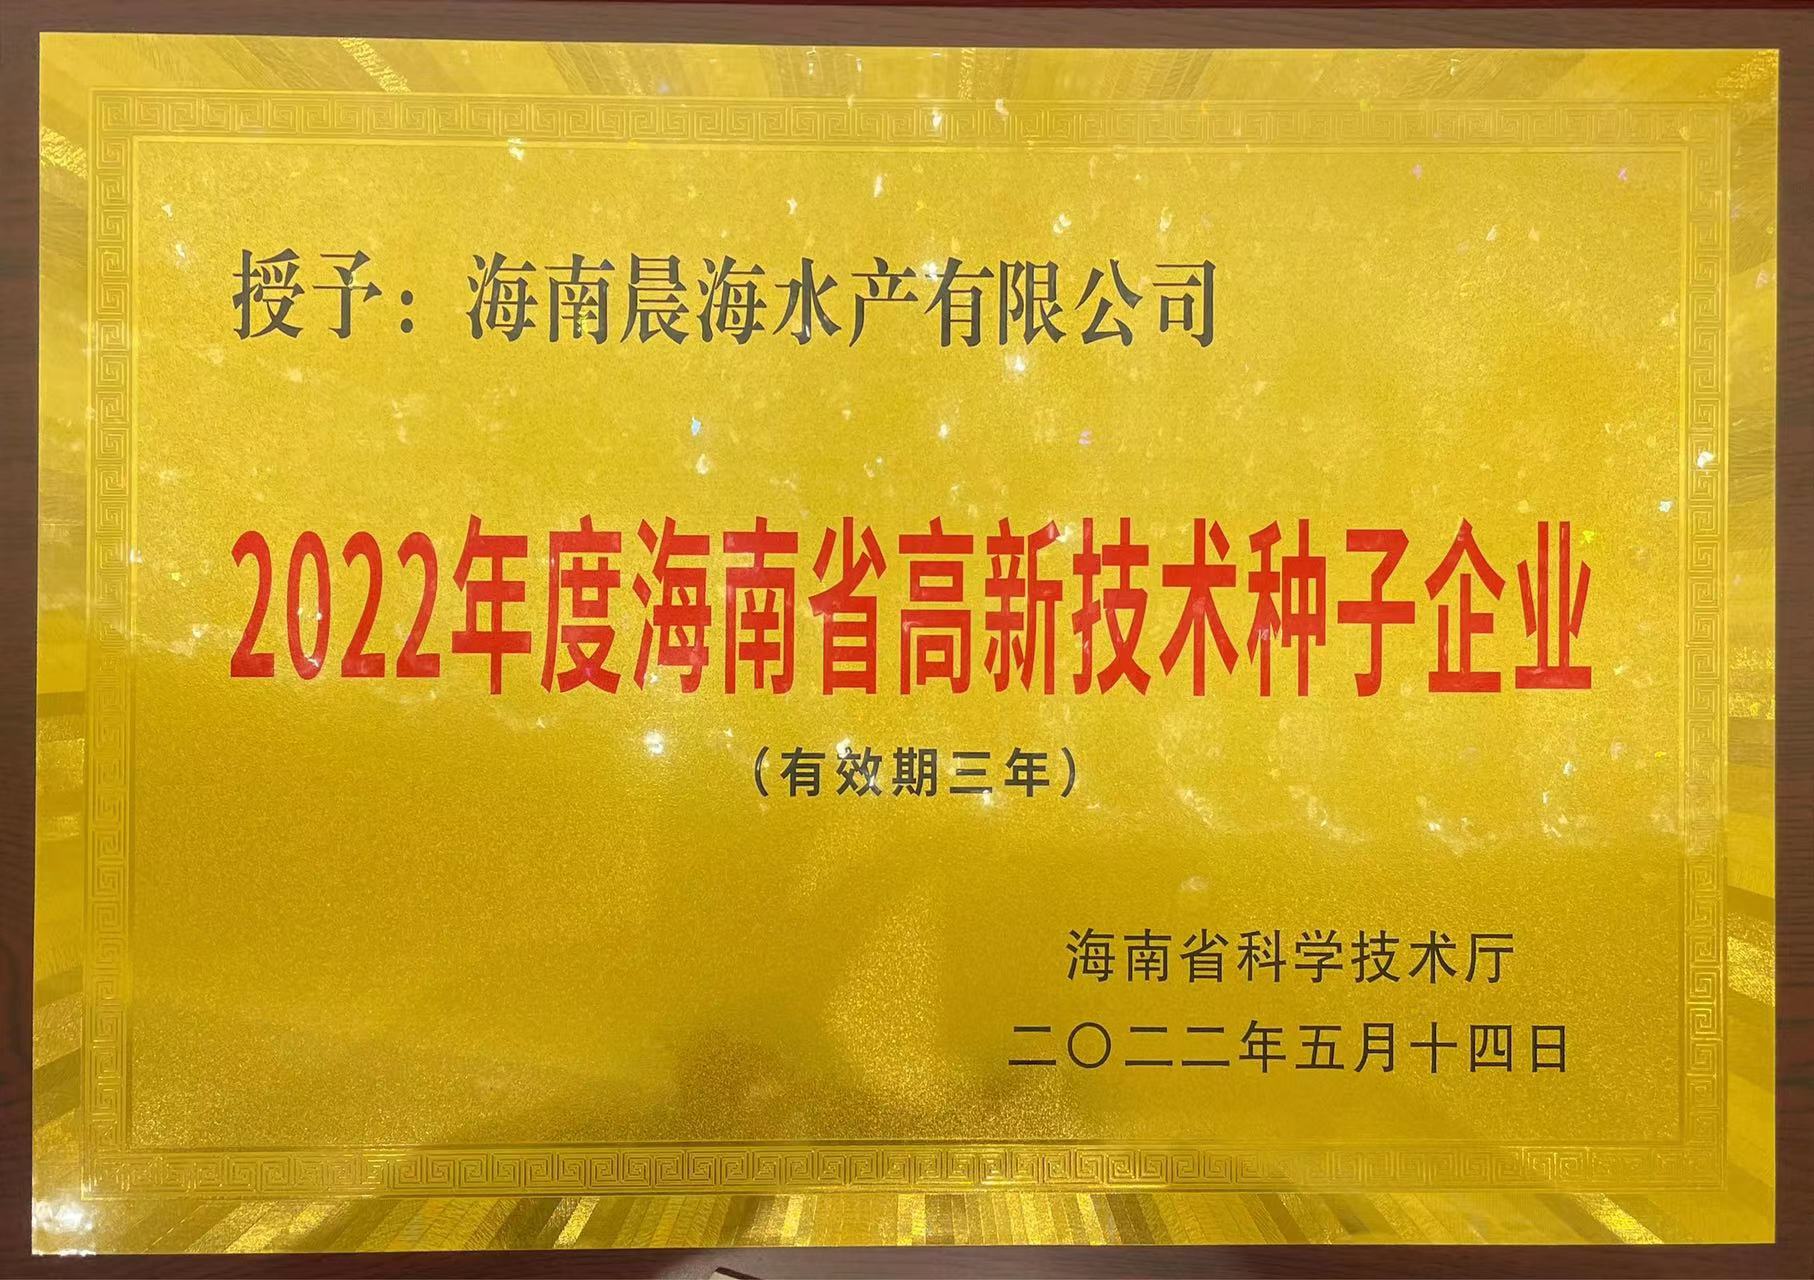 晨海水产荣获“海南省高新技术种子企业”称号